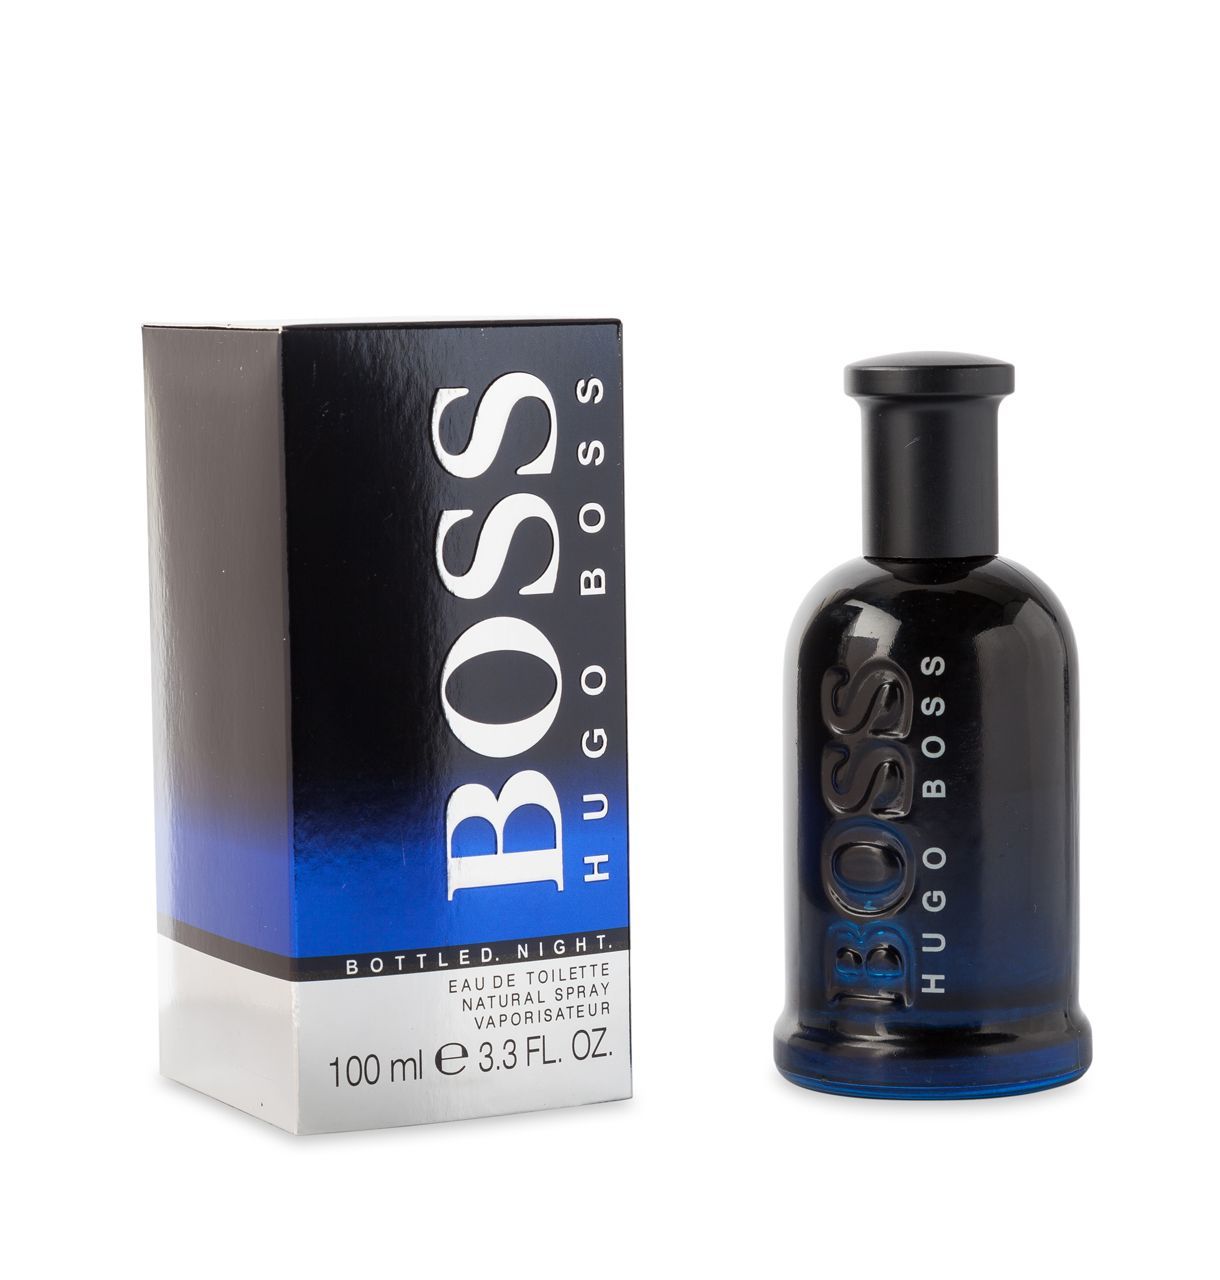 Ml hugo. Boss "Hugo Boss Bottled Night" 100 ml. Hugo Boss Boss 6, EDT., 100 ml. Парфюмерия Hugo Boss "Bottled Night" 100ml для мужчин. Boss Bottled Hugo Boss 100 мл.